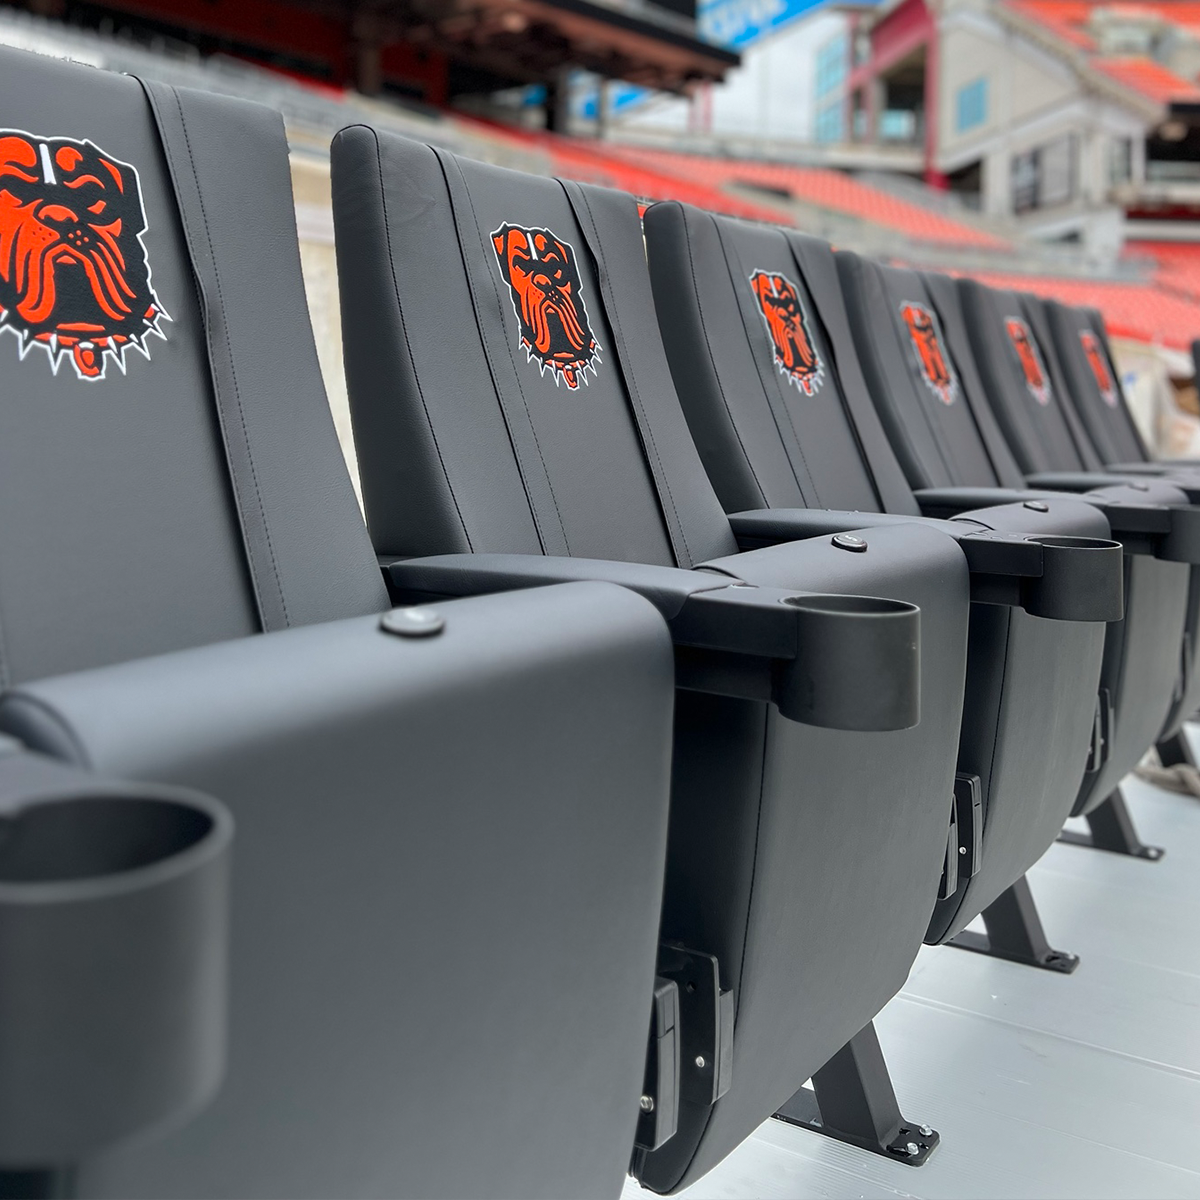 SuiteMax 3.5 VIP Seats with Cincinnati Reds Cooperstown Logo